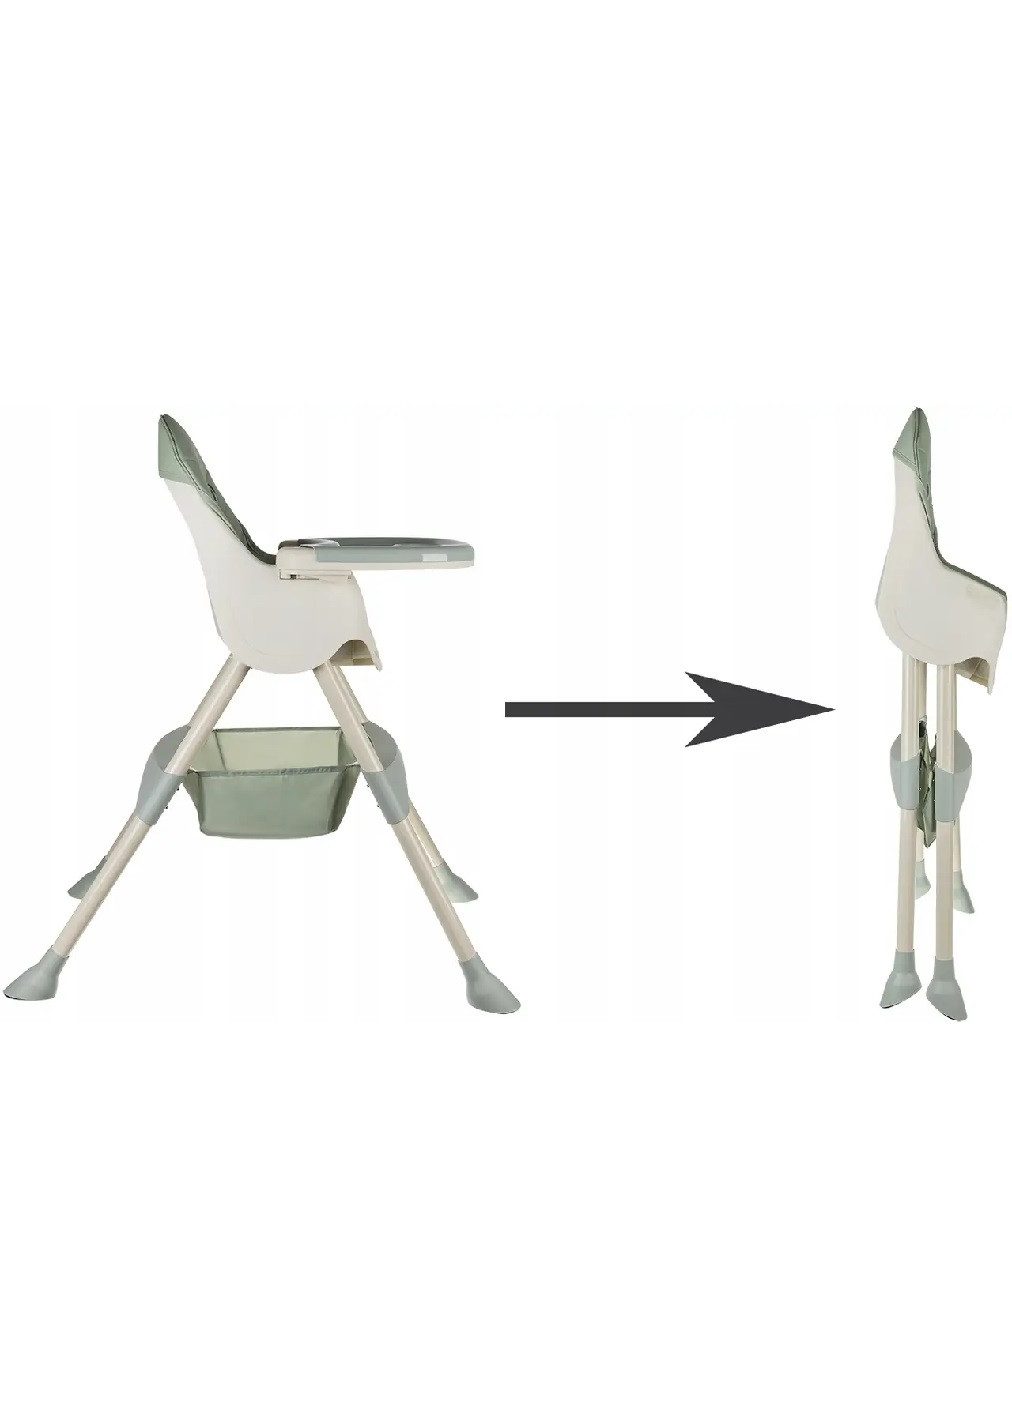 Дитяче крісло розбірне стільчик компактне для годування дітей малюків 3 в 1 з підносом (475150-Prob) Світло-зелене Unbranded (262371403)